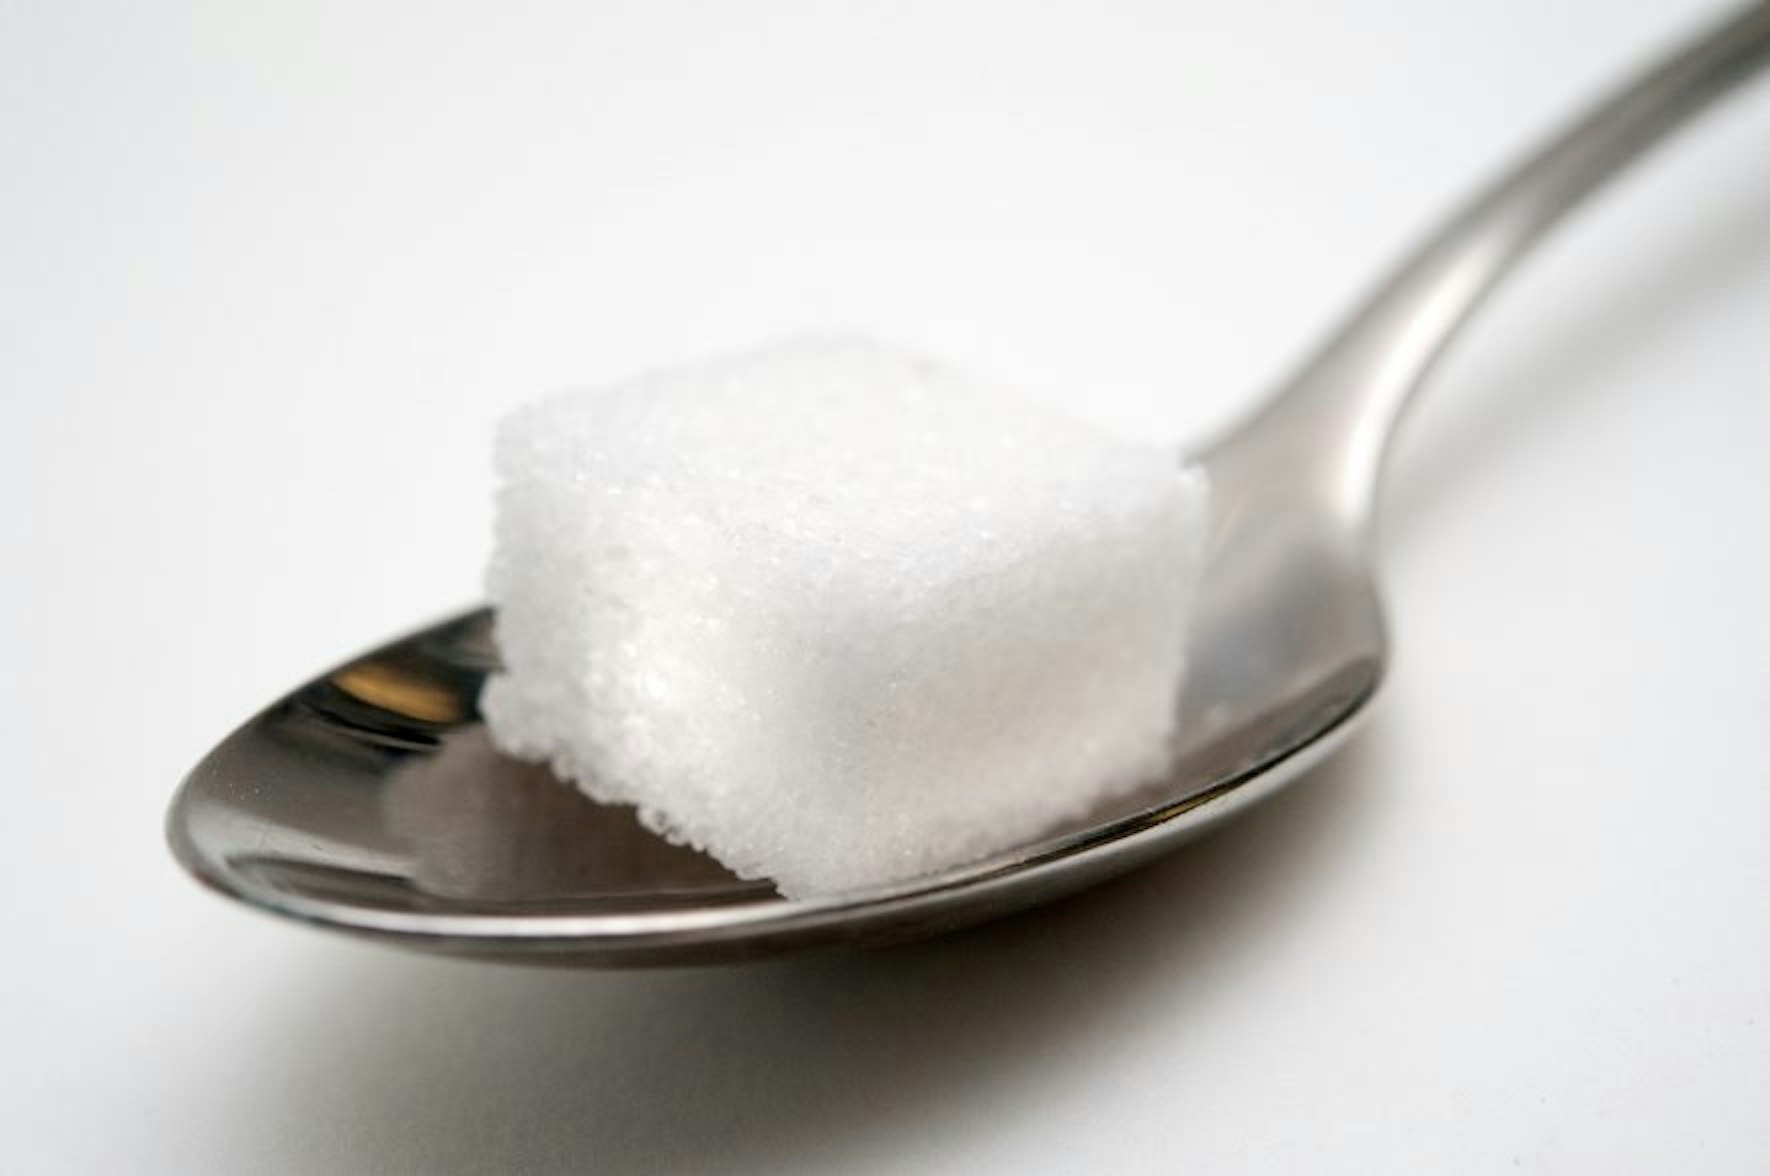 Zucker steckt fast in allem, was gut schmeckt. Er sorgt aber auch für Übergewicht und schädigt die Zähne.